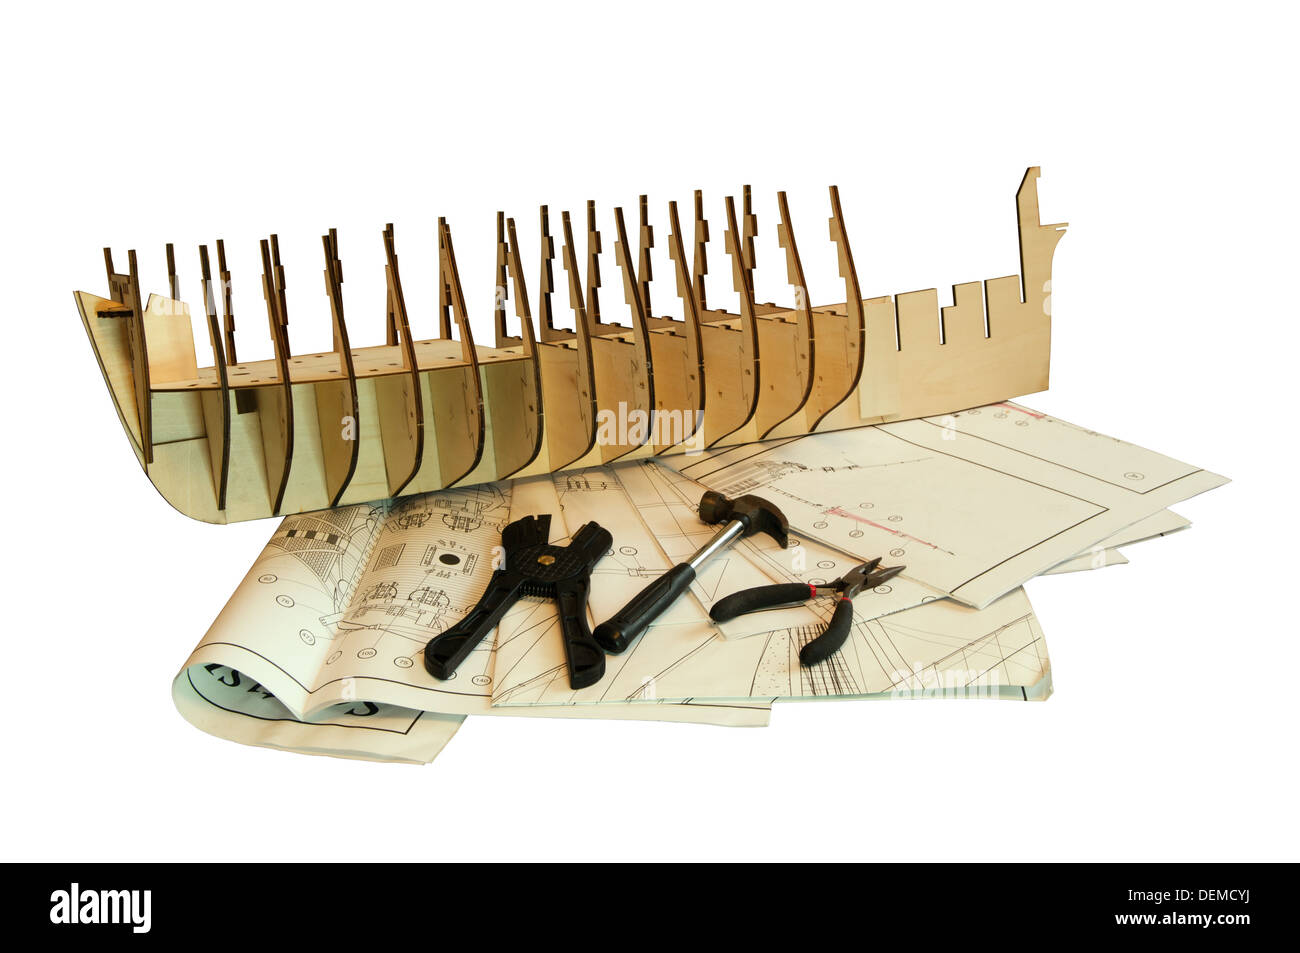 Holzschiff Modell mit Werkzeugen und Entwürfe, die isoliert auf weißem Hintergrund Stockfoto